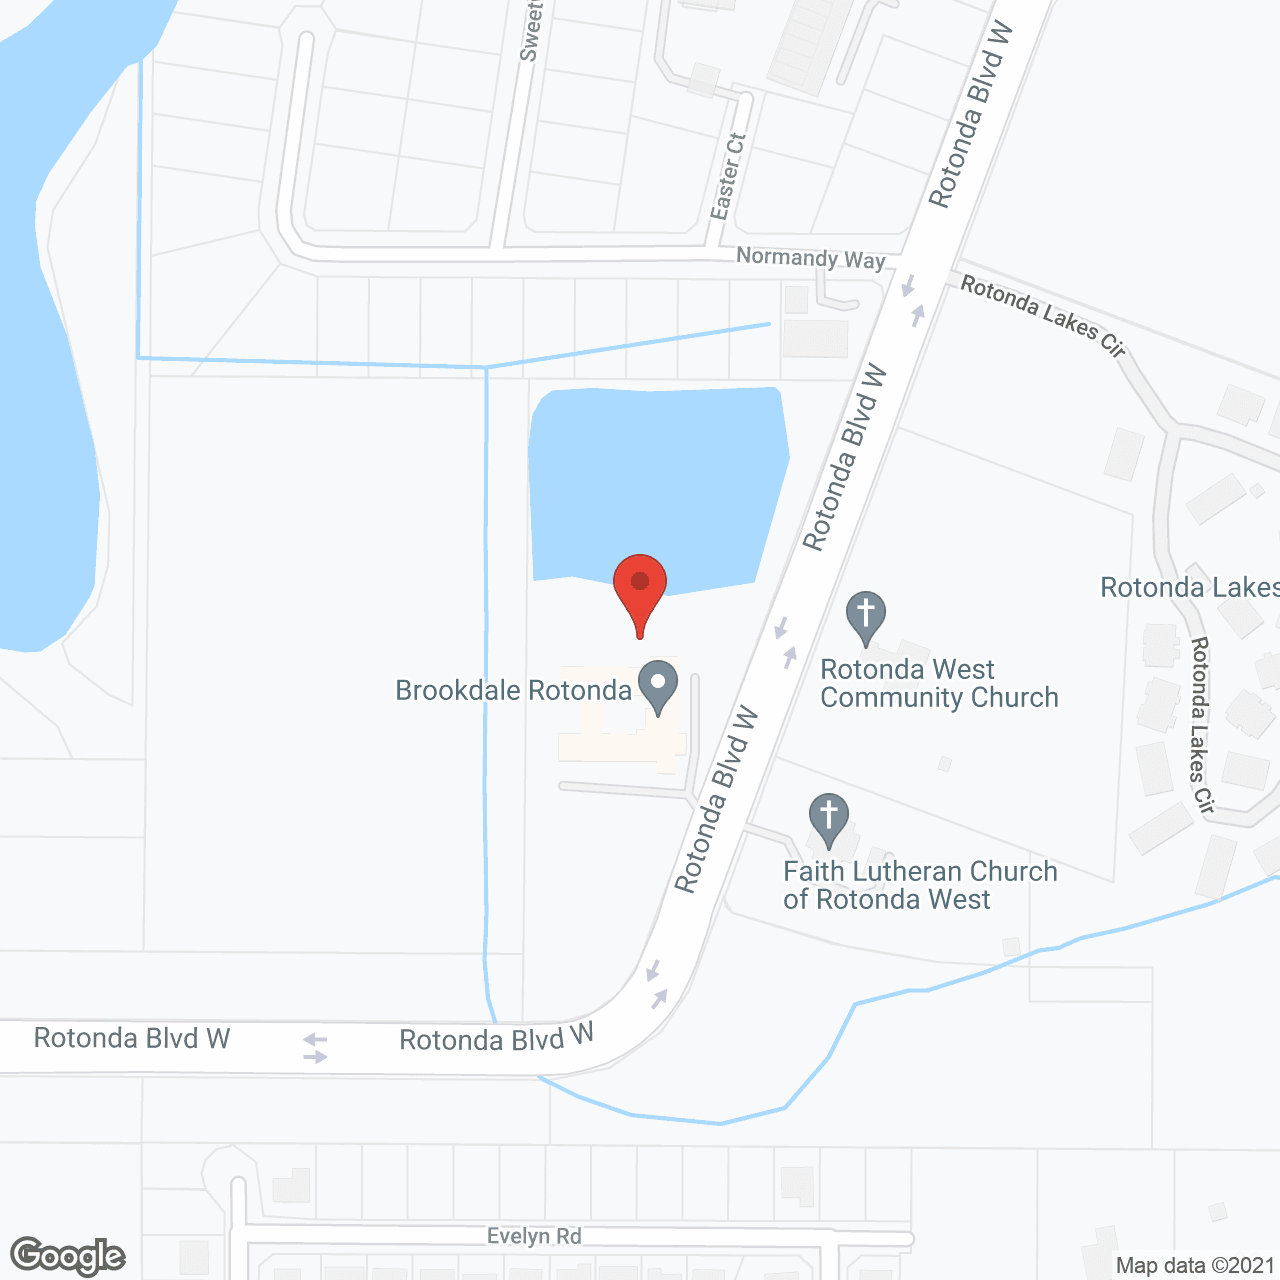 Brookdale Rotonda in google map